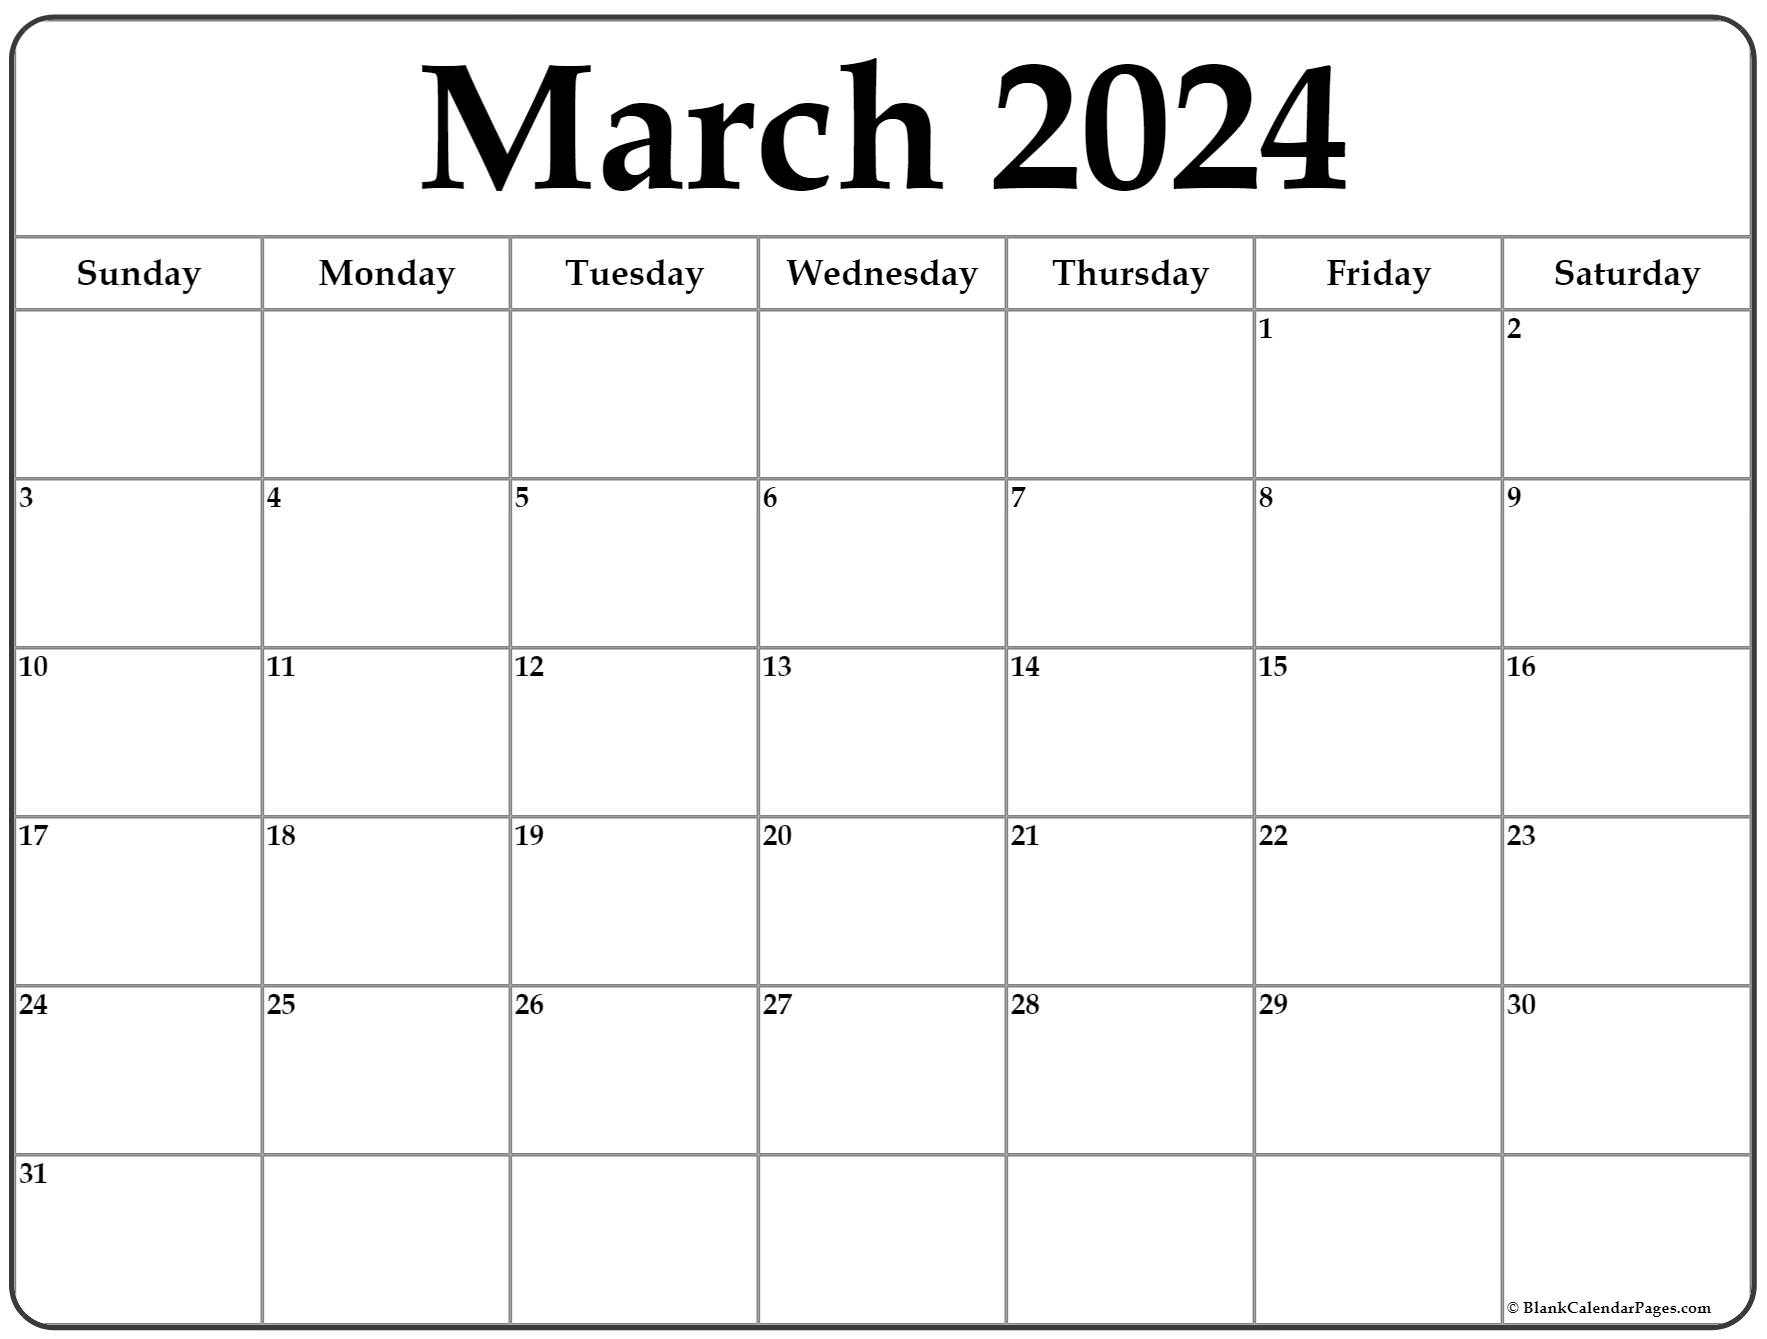 March 2022 Calendar Canada Printable.March 2022 Calendar Free Printable Calendar